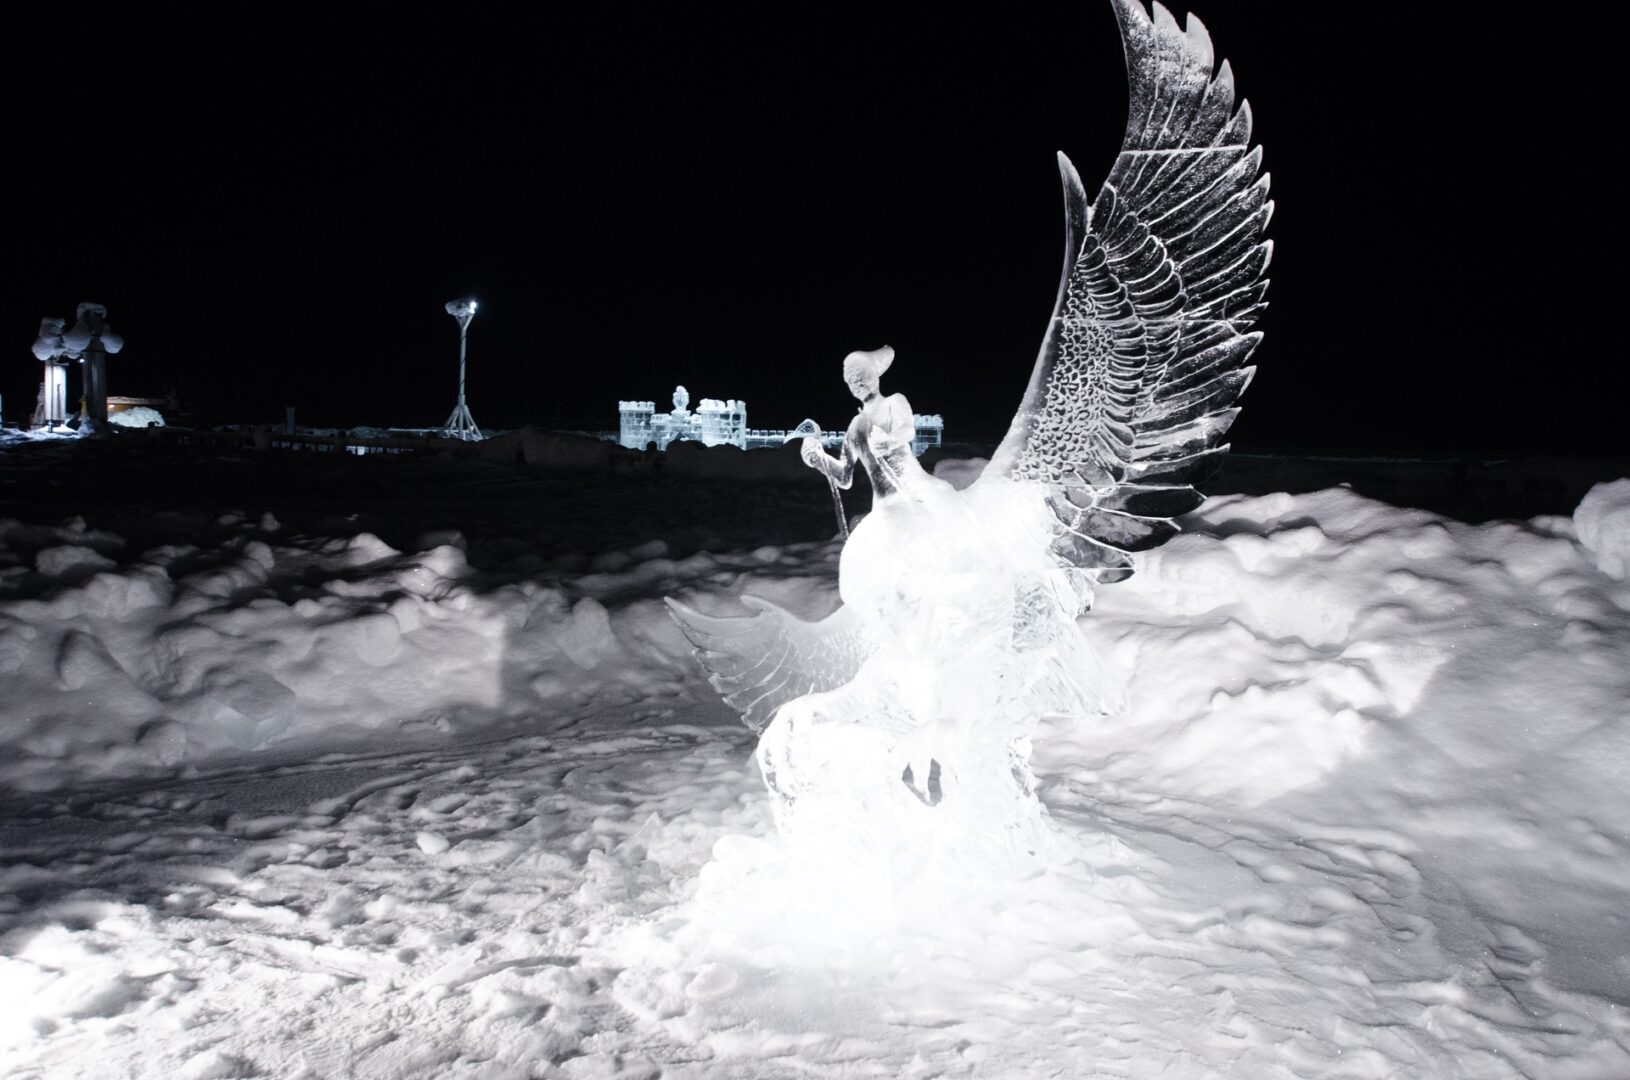 Ice sculpture of a bird